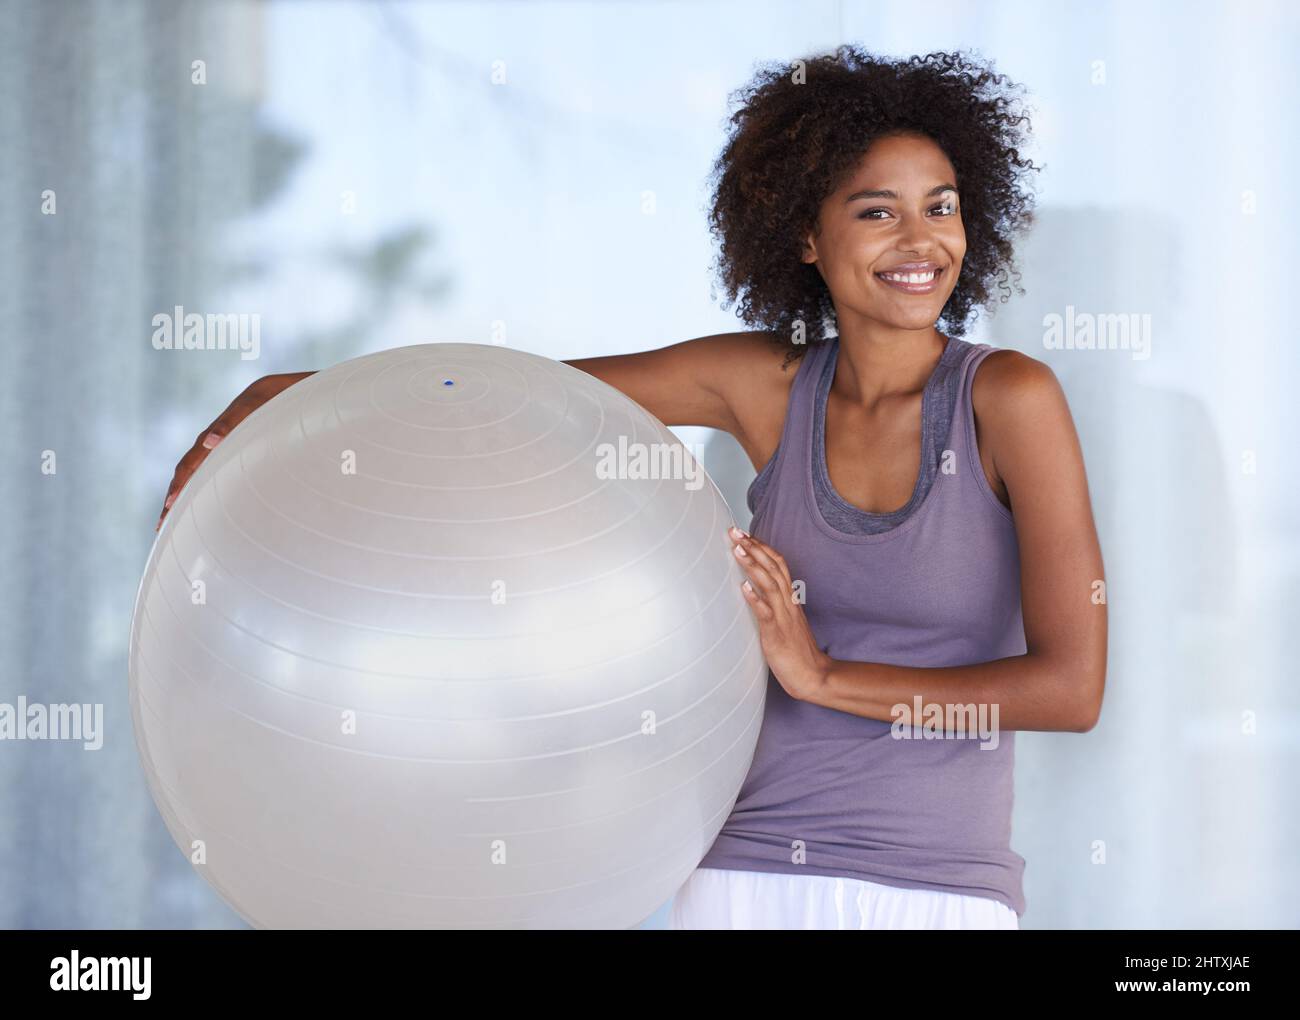 Il mio segreto di idoneità. Ritratto corto di una giovane donna attraente in piedi con una sfera di esercitazione. Foto Stock